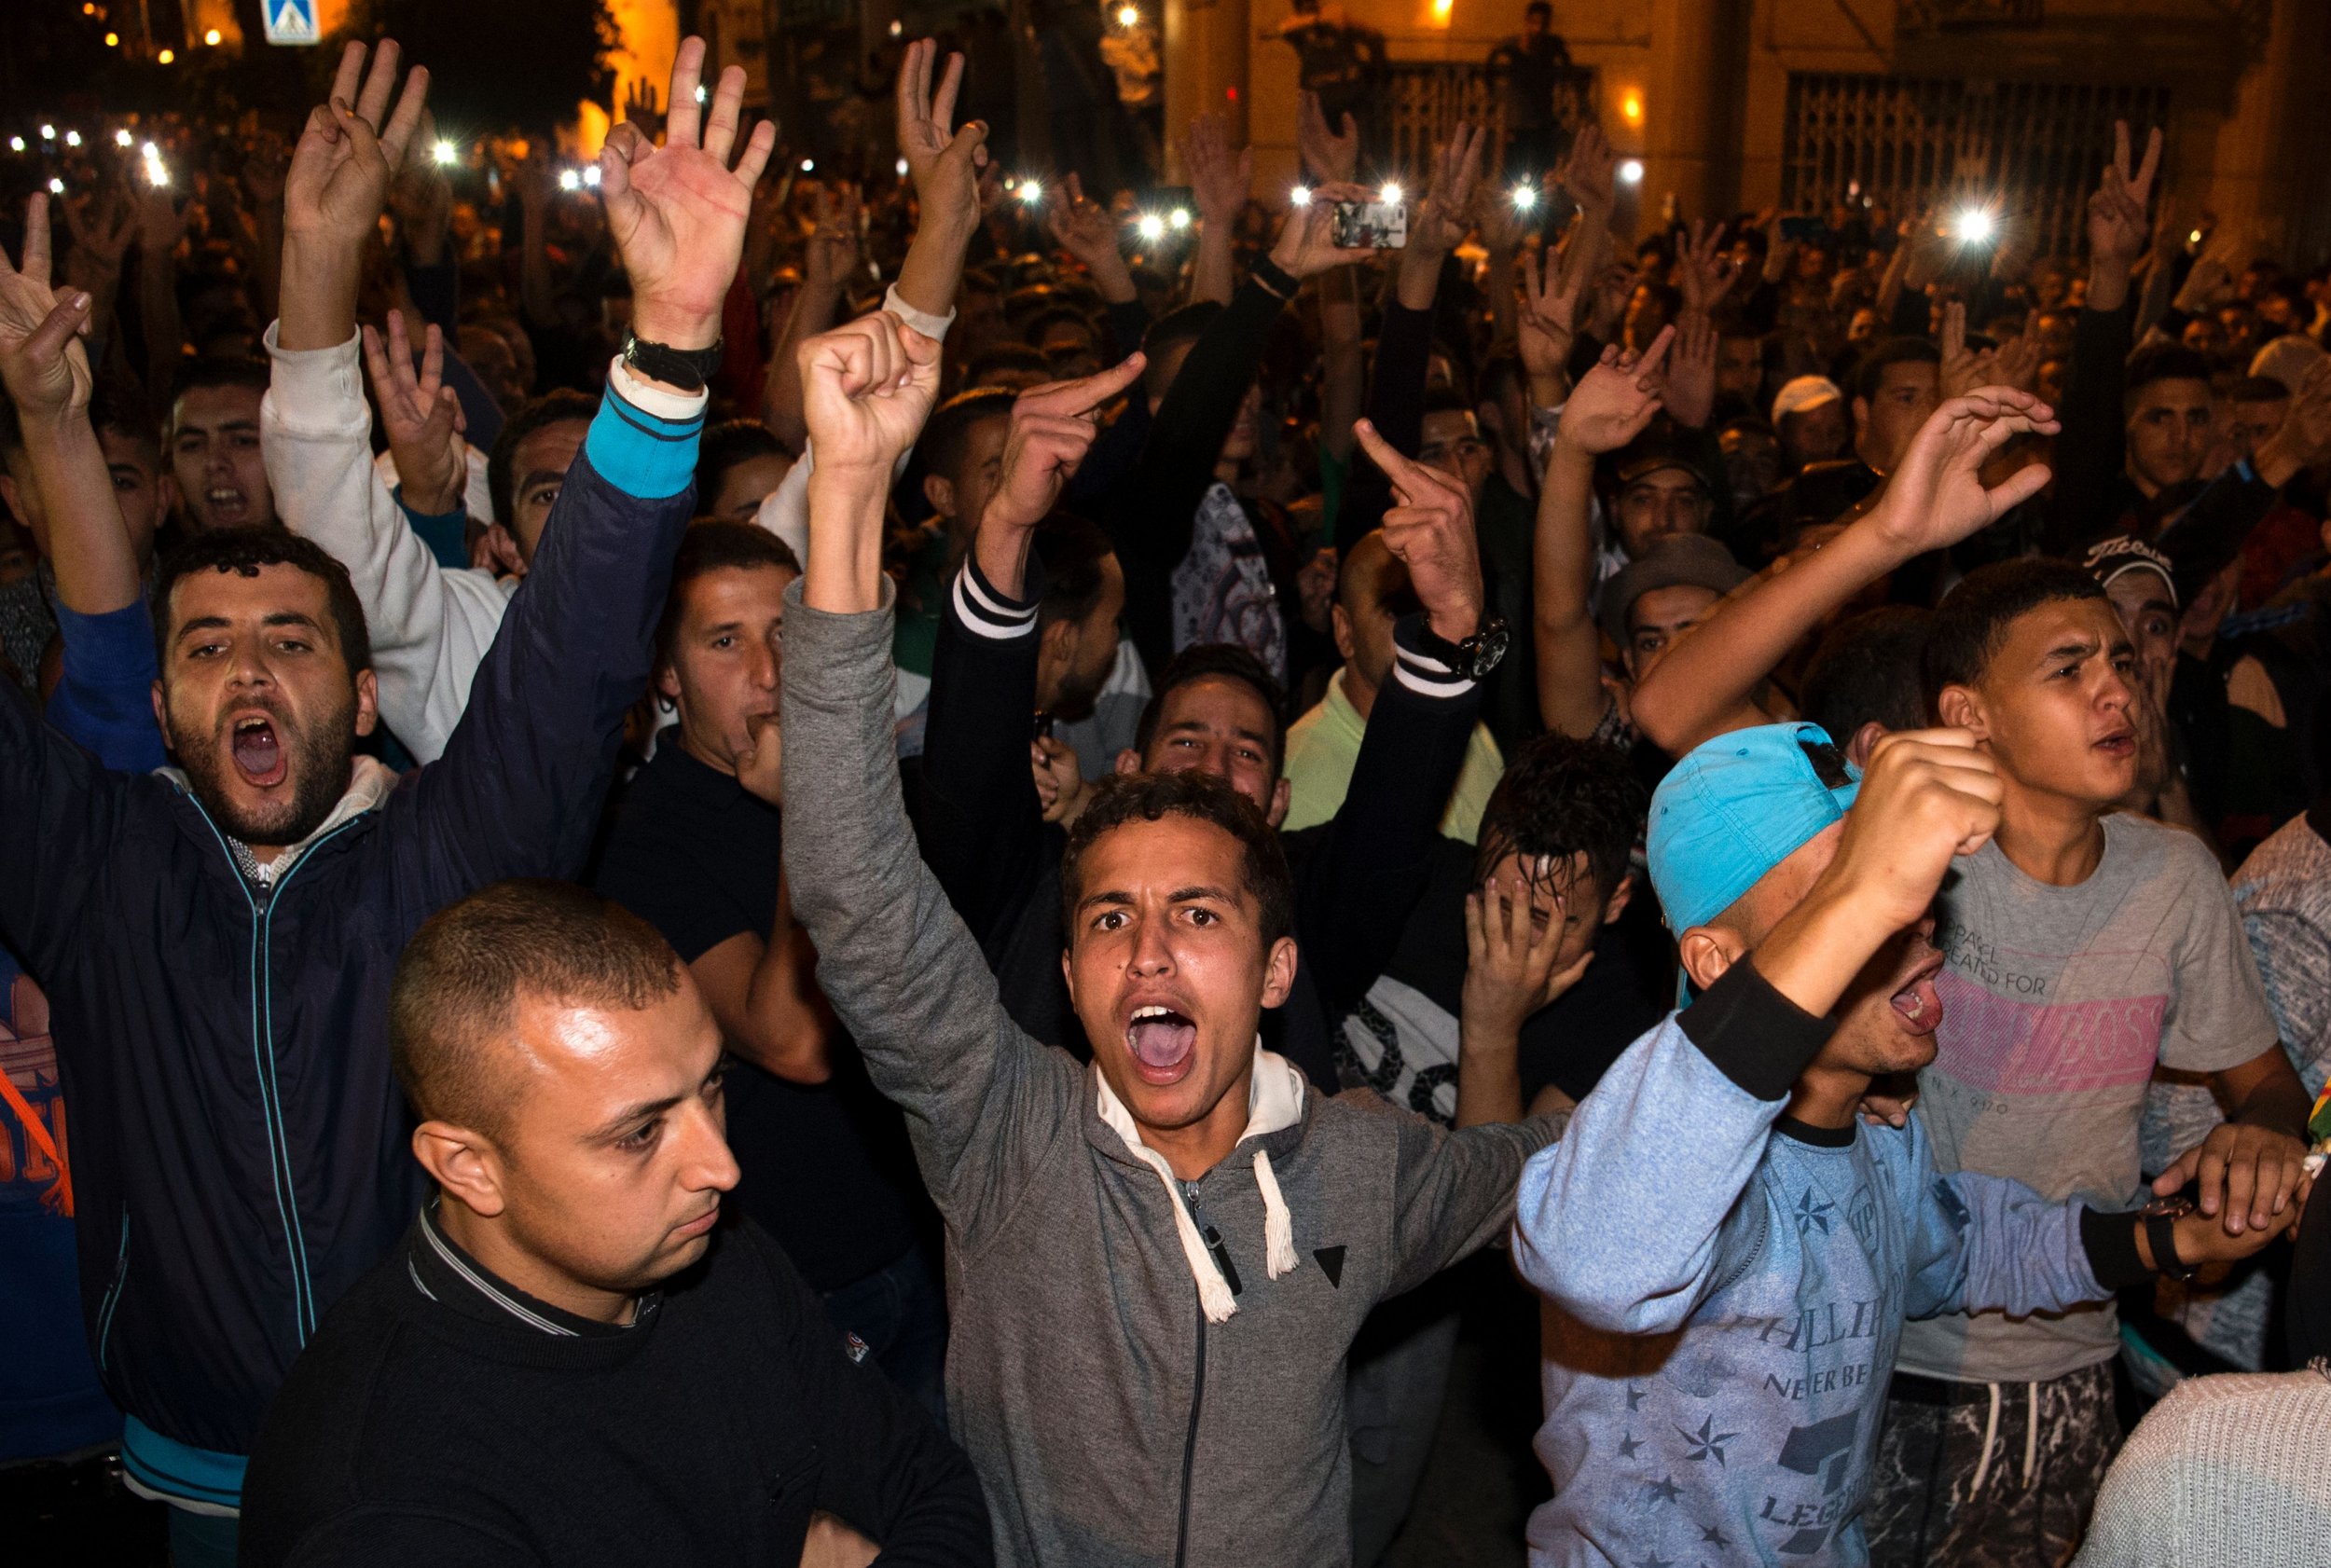 Morocco protest